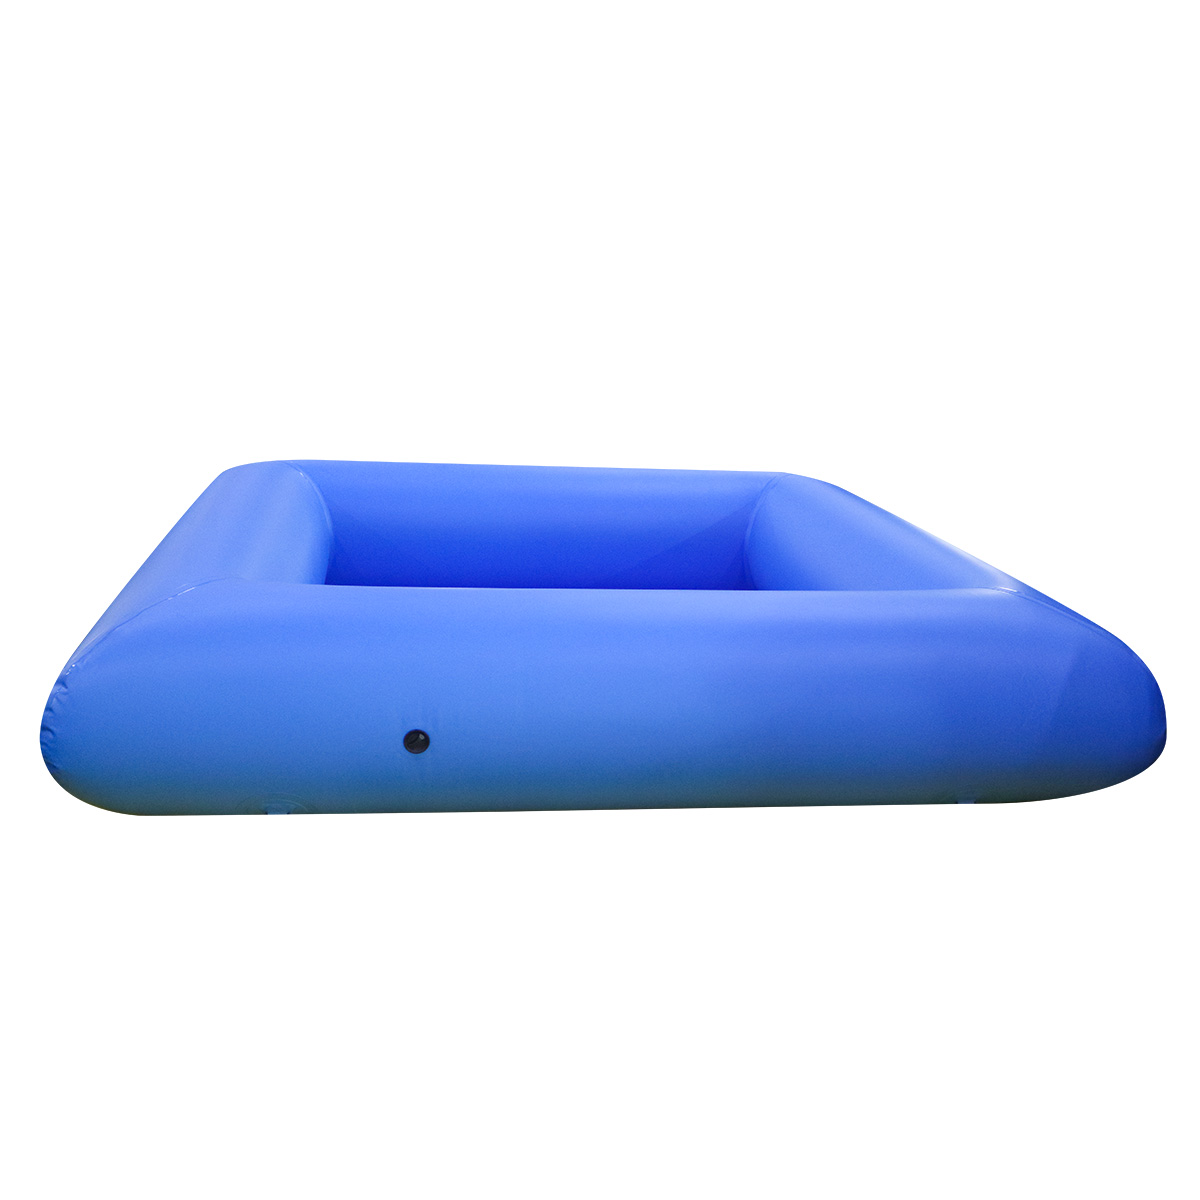 Se vende piscina azul inflable comercial06